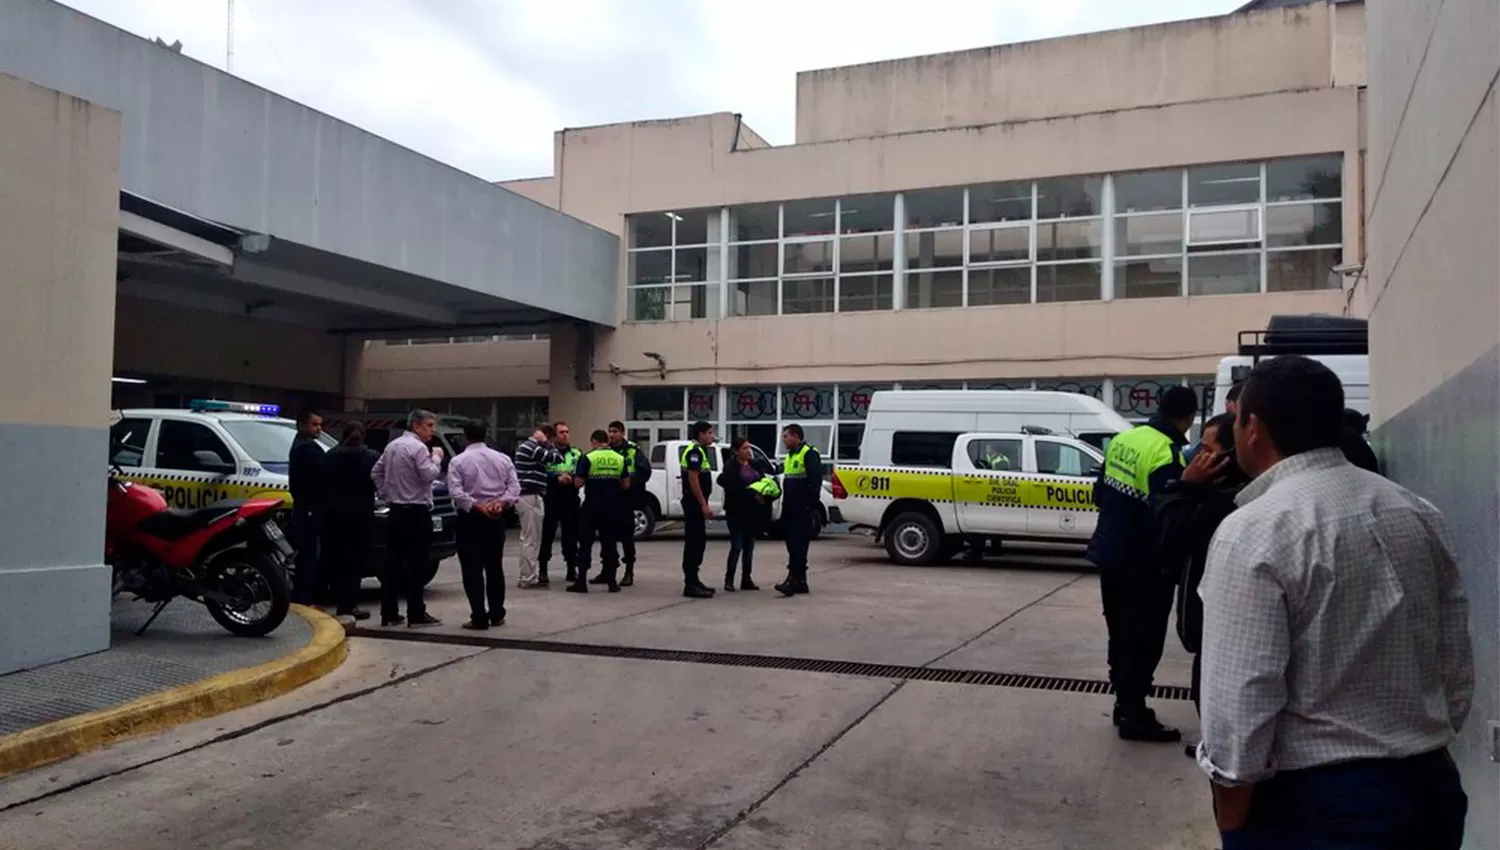 CONSTERNACIÓN. Policías se concentraron en el Hospital Padilla luego de conocer el caso. FOTO TOMADA DE TWITTER.COM/JOSECITORS